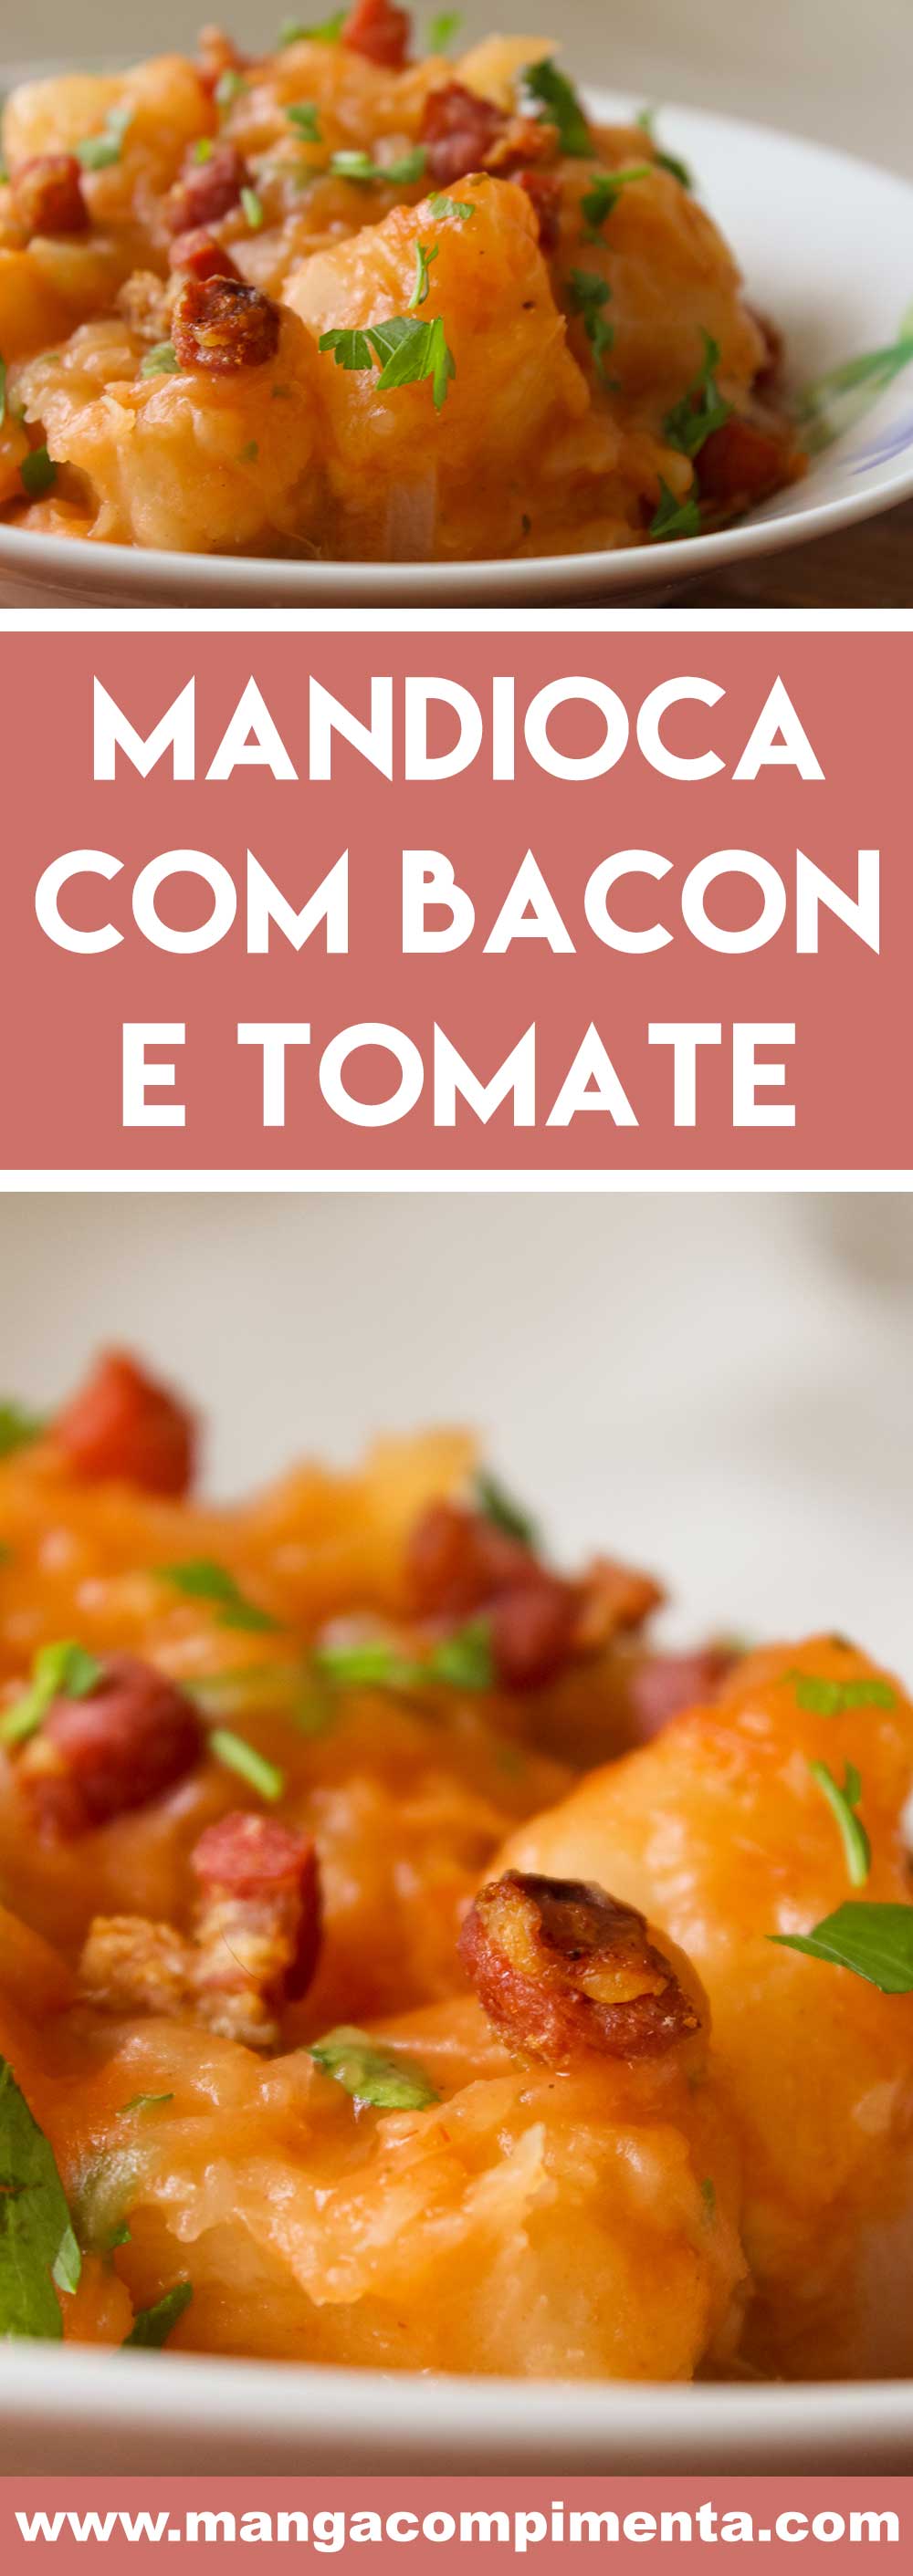 Receita de Mandioca com Bacon e Tomate - um prato delicioso para o almoço da semana!